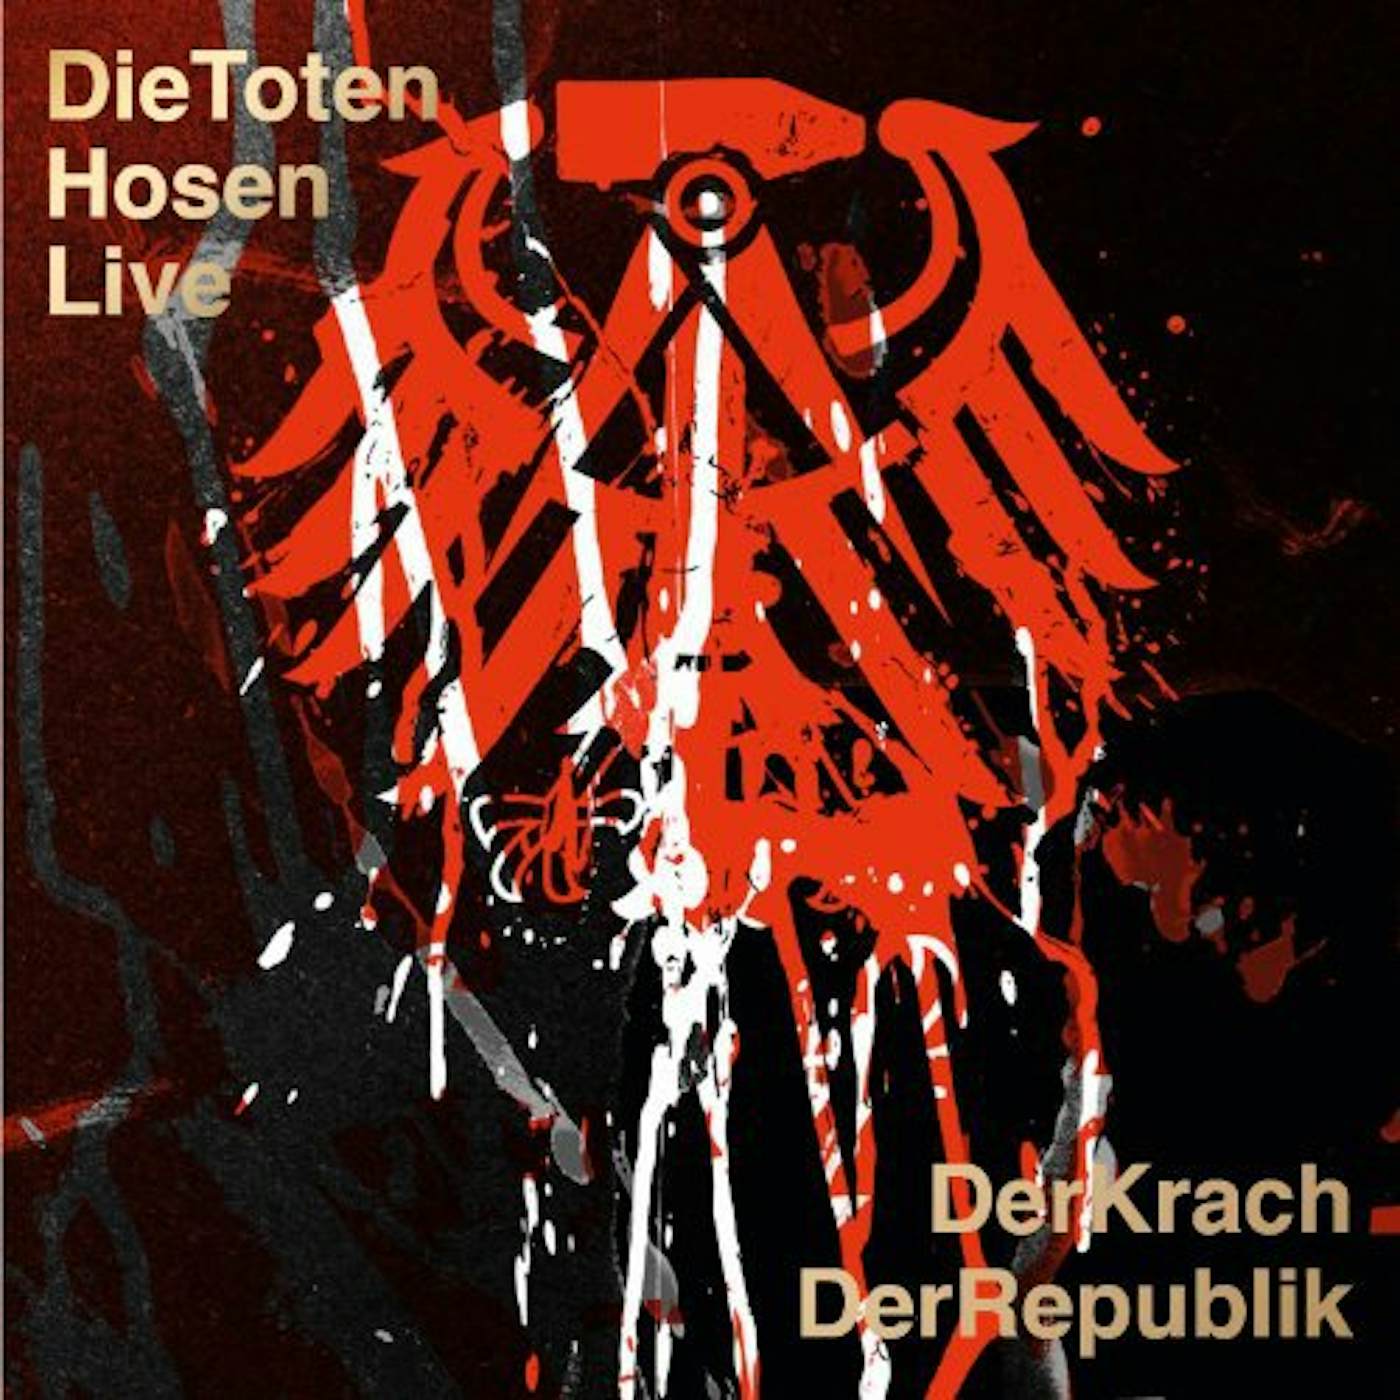 Die Toten Hosen LIVE:DER KRACH DER REPUBLIK Vinyl Record